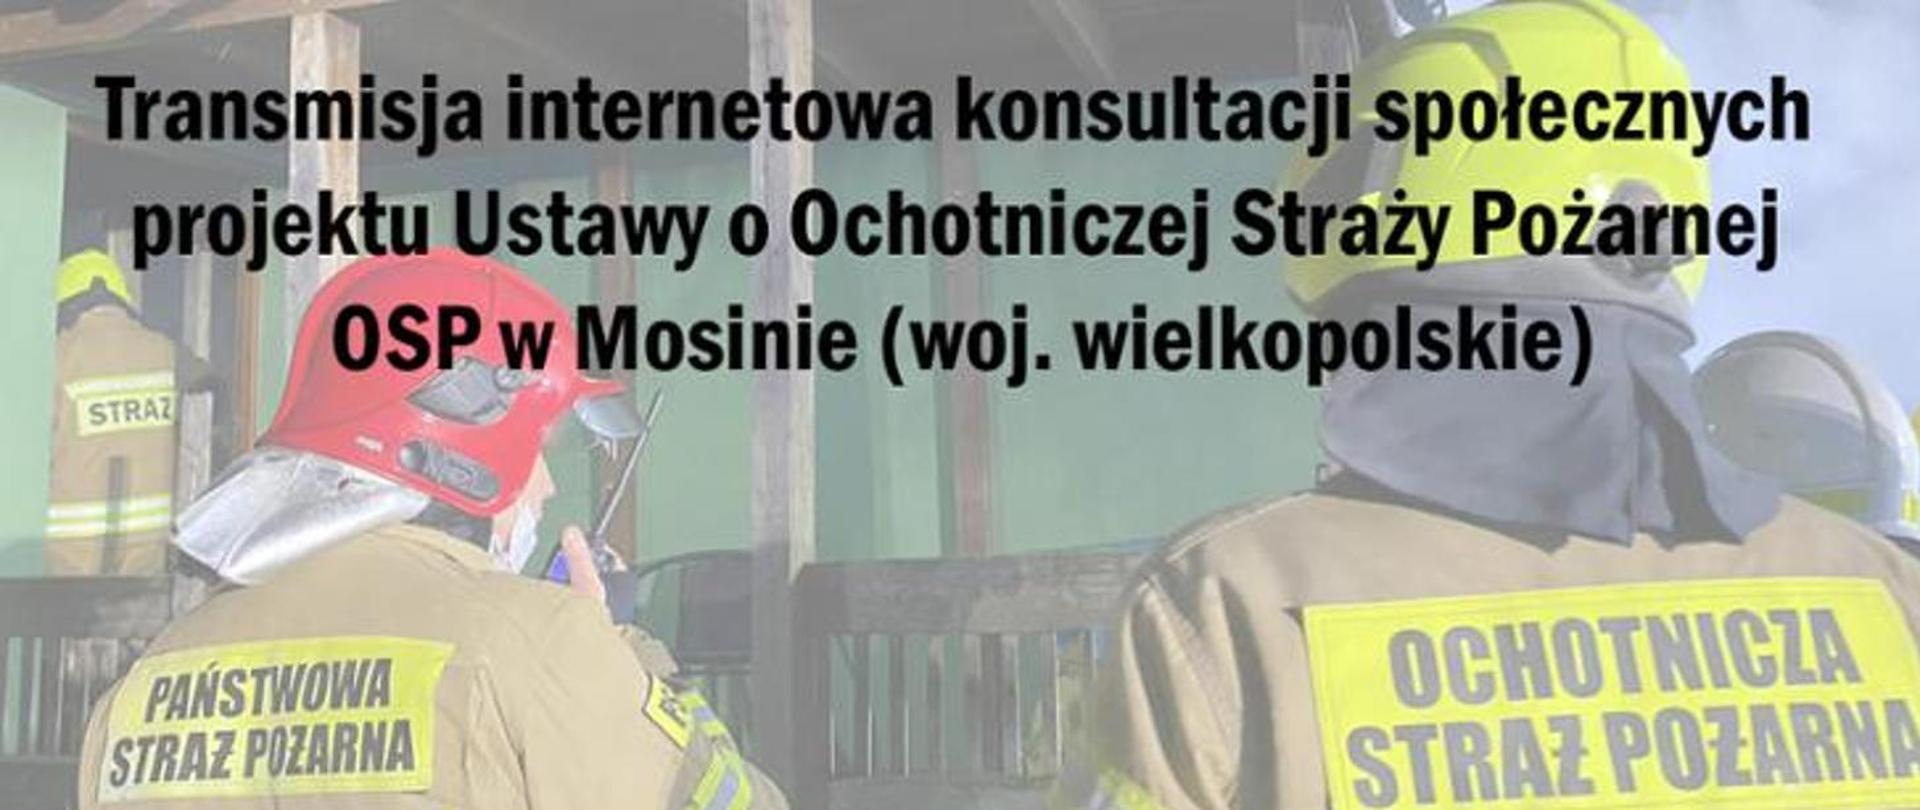 Zdjęcie przedstawia 4 strażaków podczas akcji zwróconych tyłem do fotografa. Zdjęcie jest tłem "plakatu". Na zdjęciu jest czarny napis "Transmisja internetowa konsultacji społecznych projektu Ustawy o Ochotniczej Straży Pożarnej OSP w Mosinie (woj. wielkopolskie)"